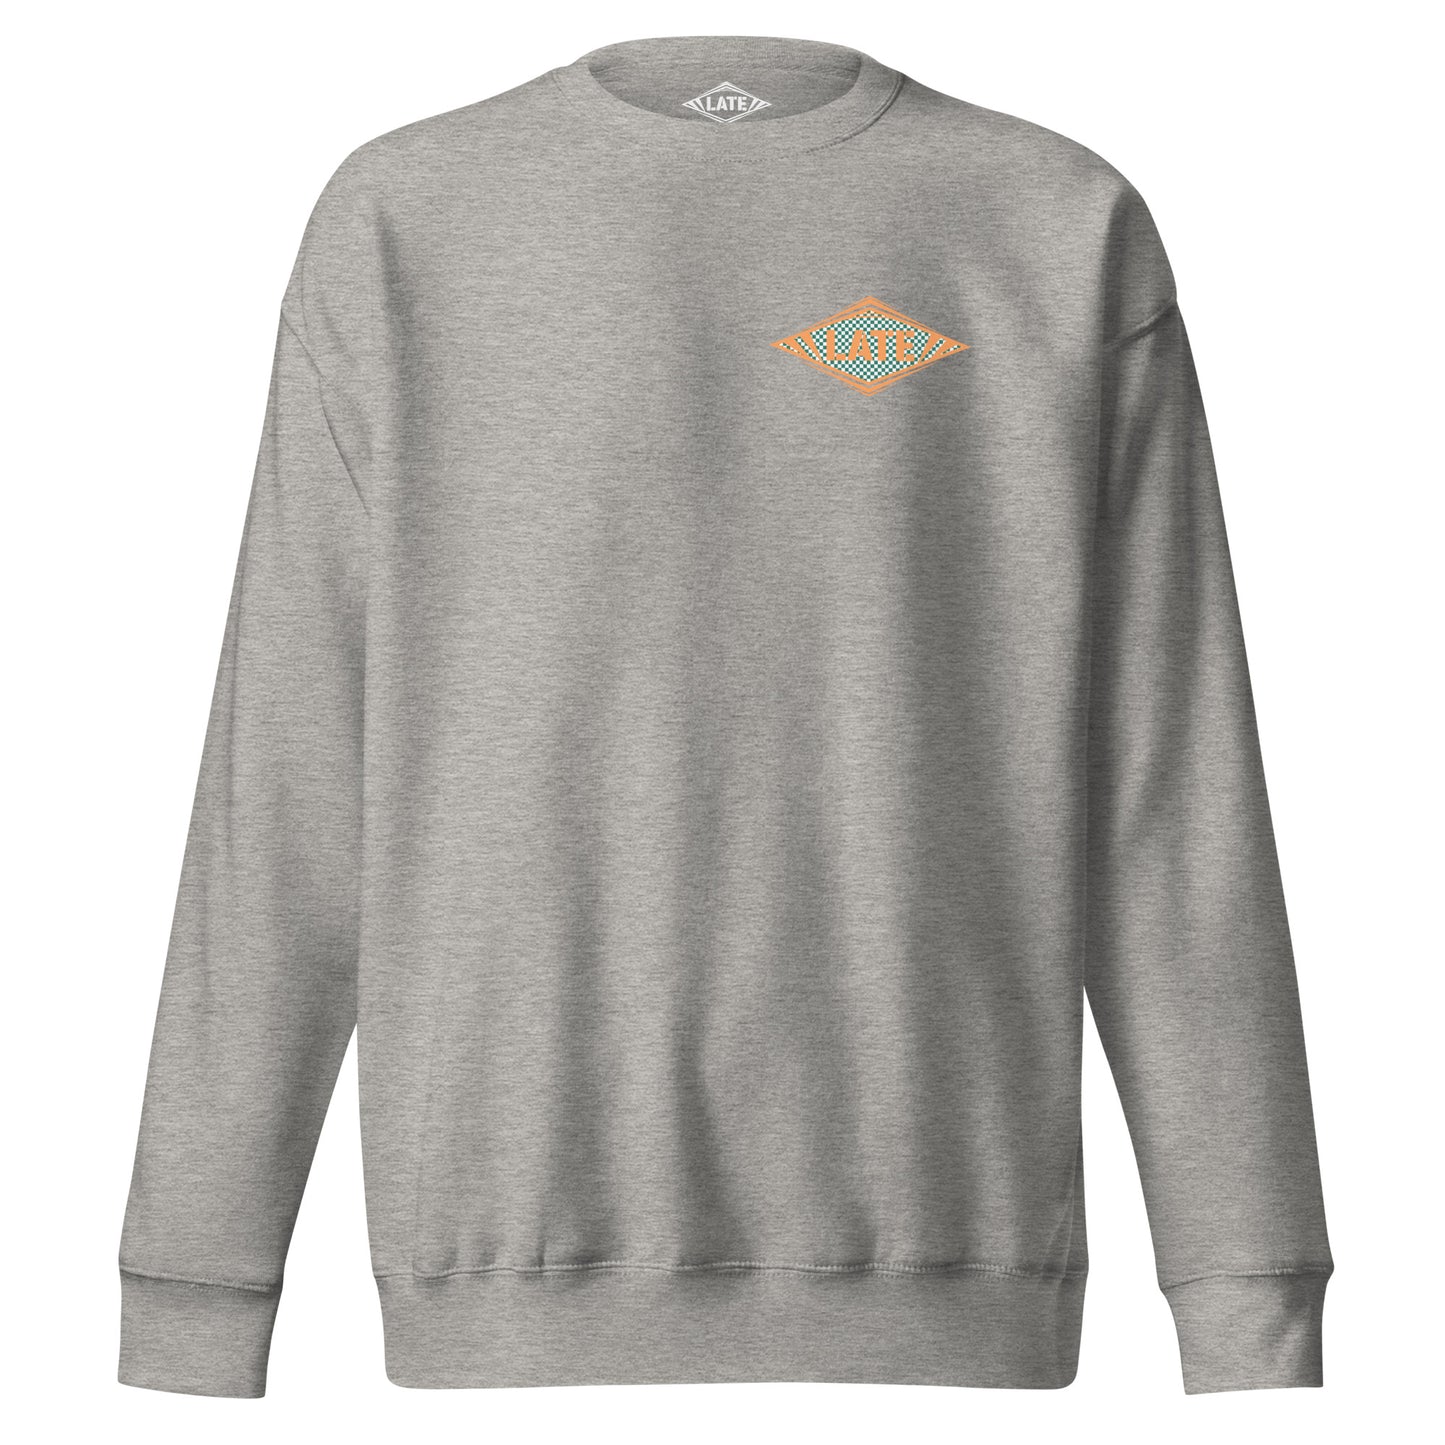 Sweatshirt Shred It logo Late à carreaux style Vans skateboarding sweat-shirt unisex couleur gris carbon